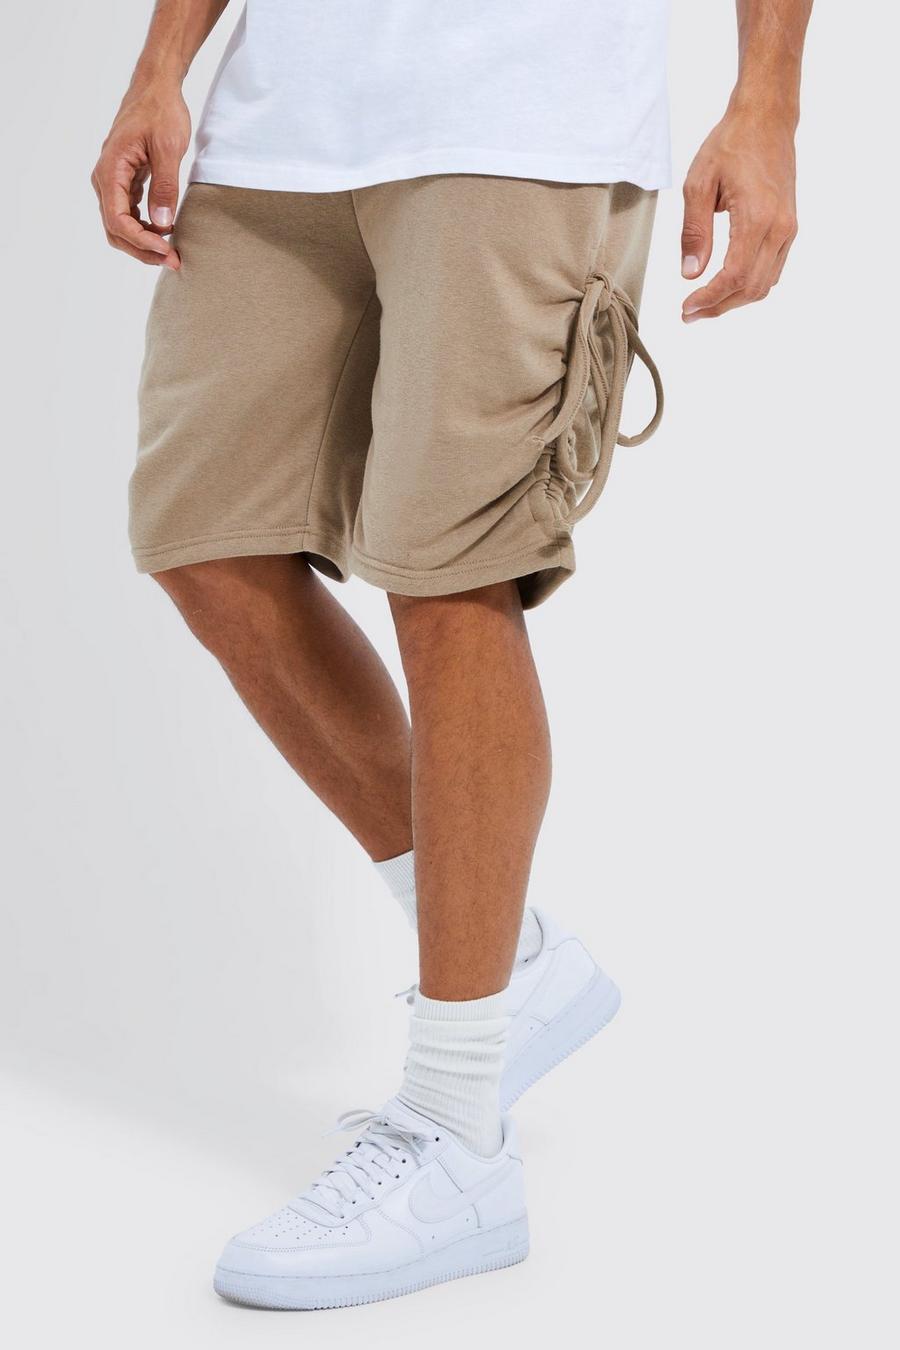 Tall lockere Jersey-Shorts mit seitlicher Raffung, Sand beige